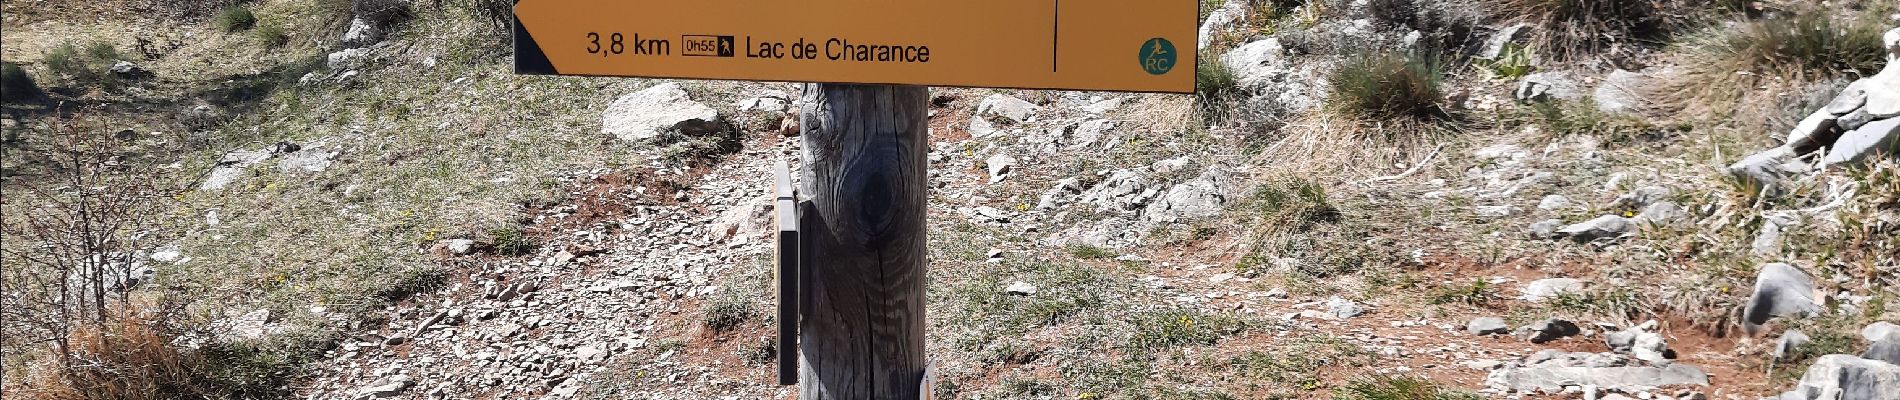 Excursión Senderismo Gap - cretes de charance - Photo